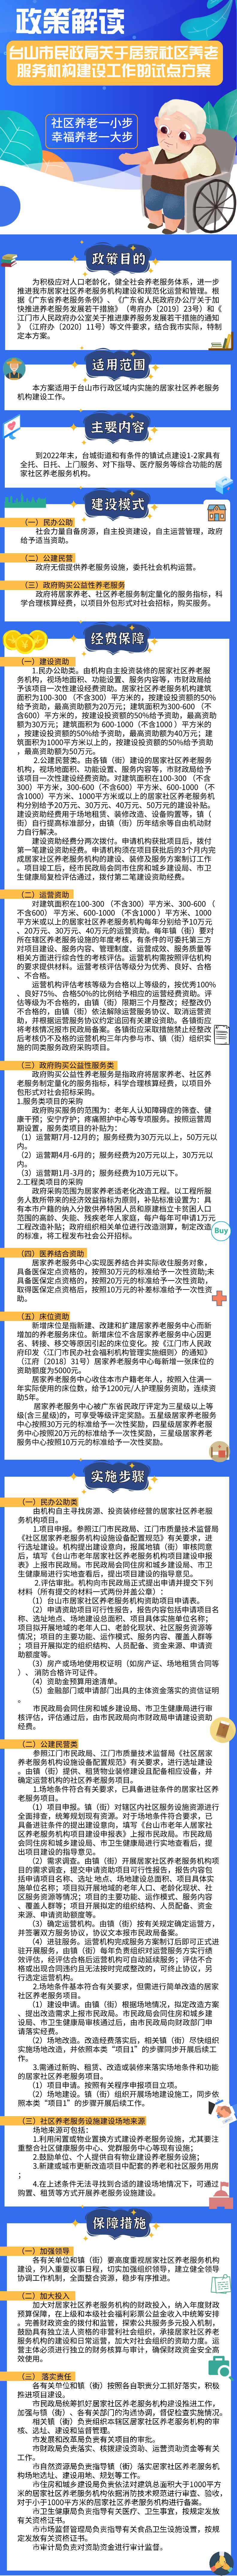 《台山市民政局关于居家社区养老服务机构建设工作的试点方案》图解.png